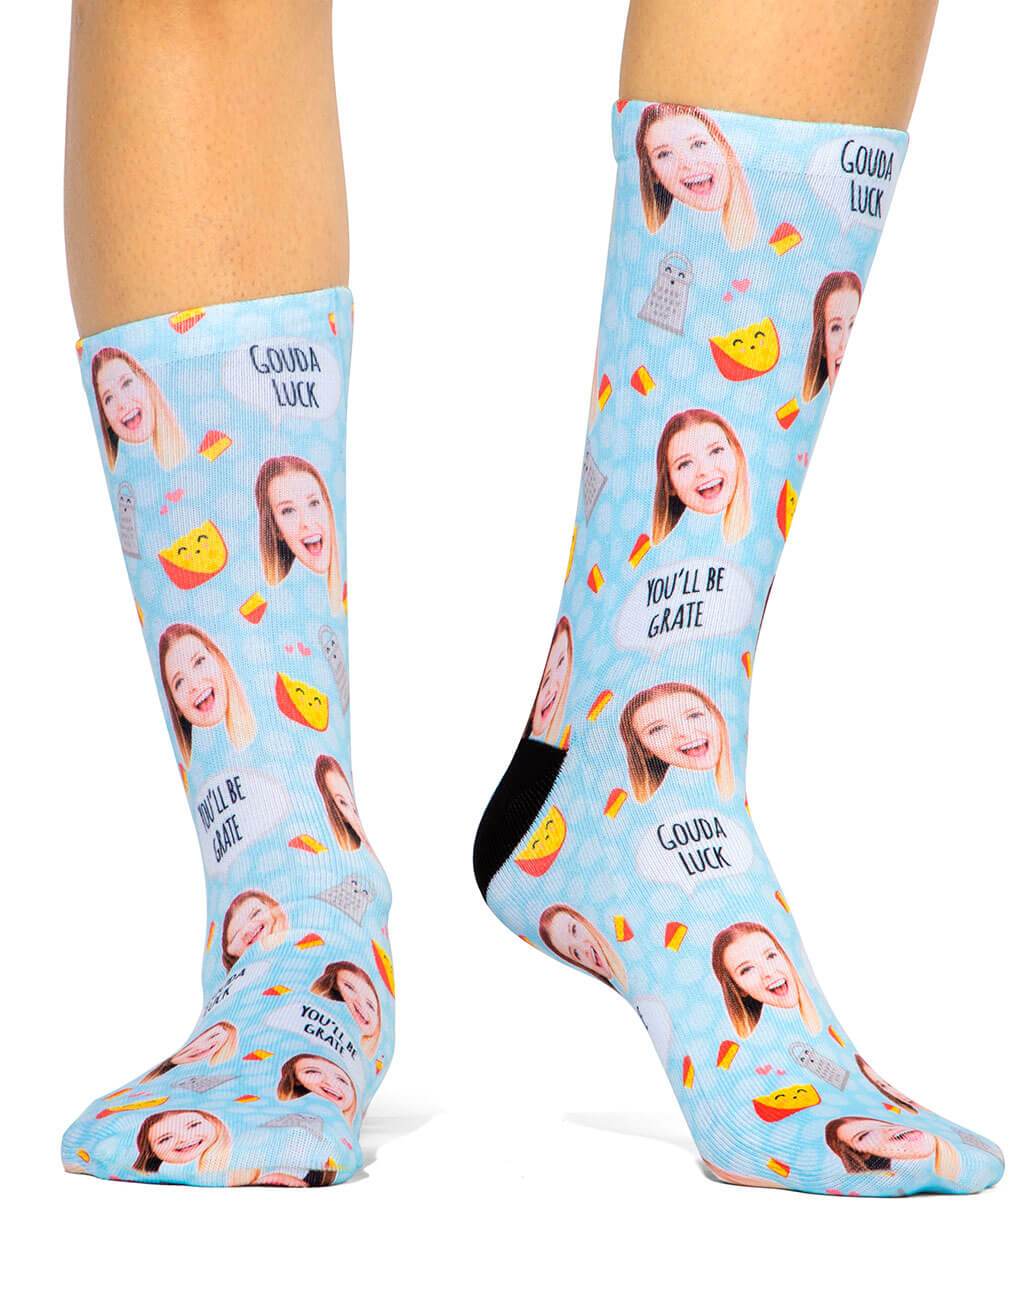 Gouda Luck Custom Socks